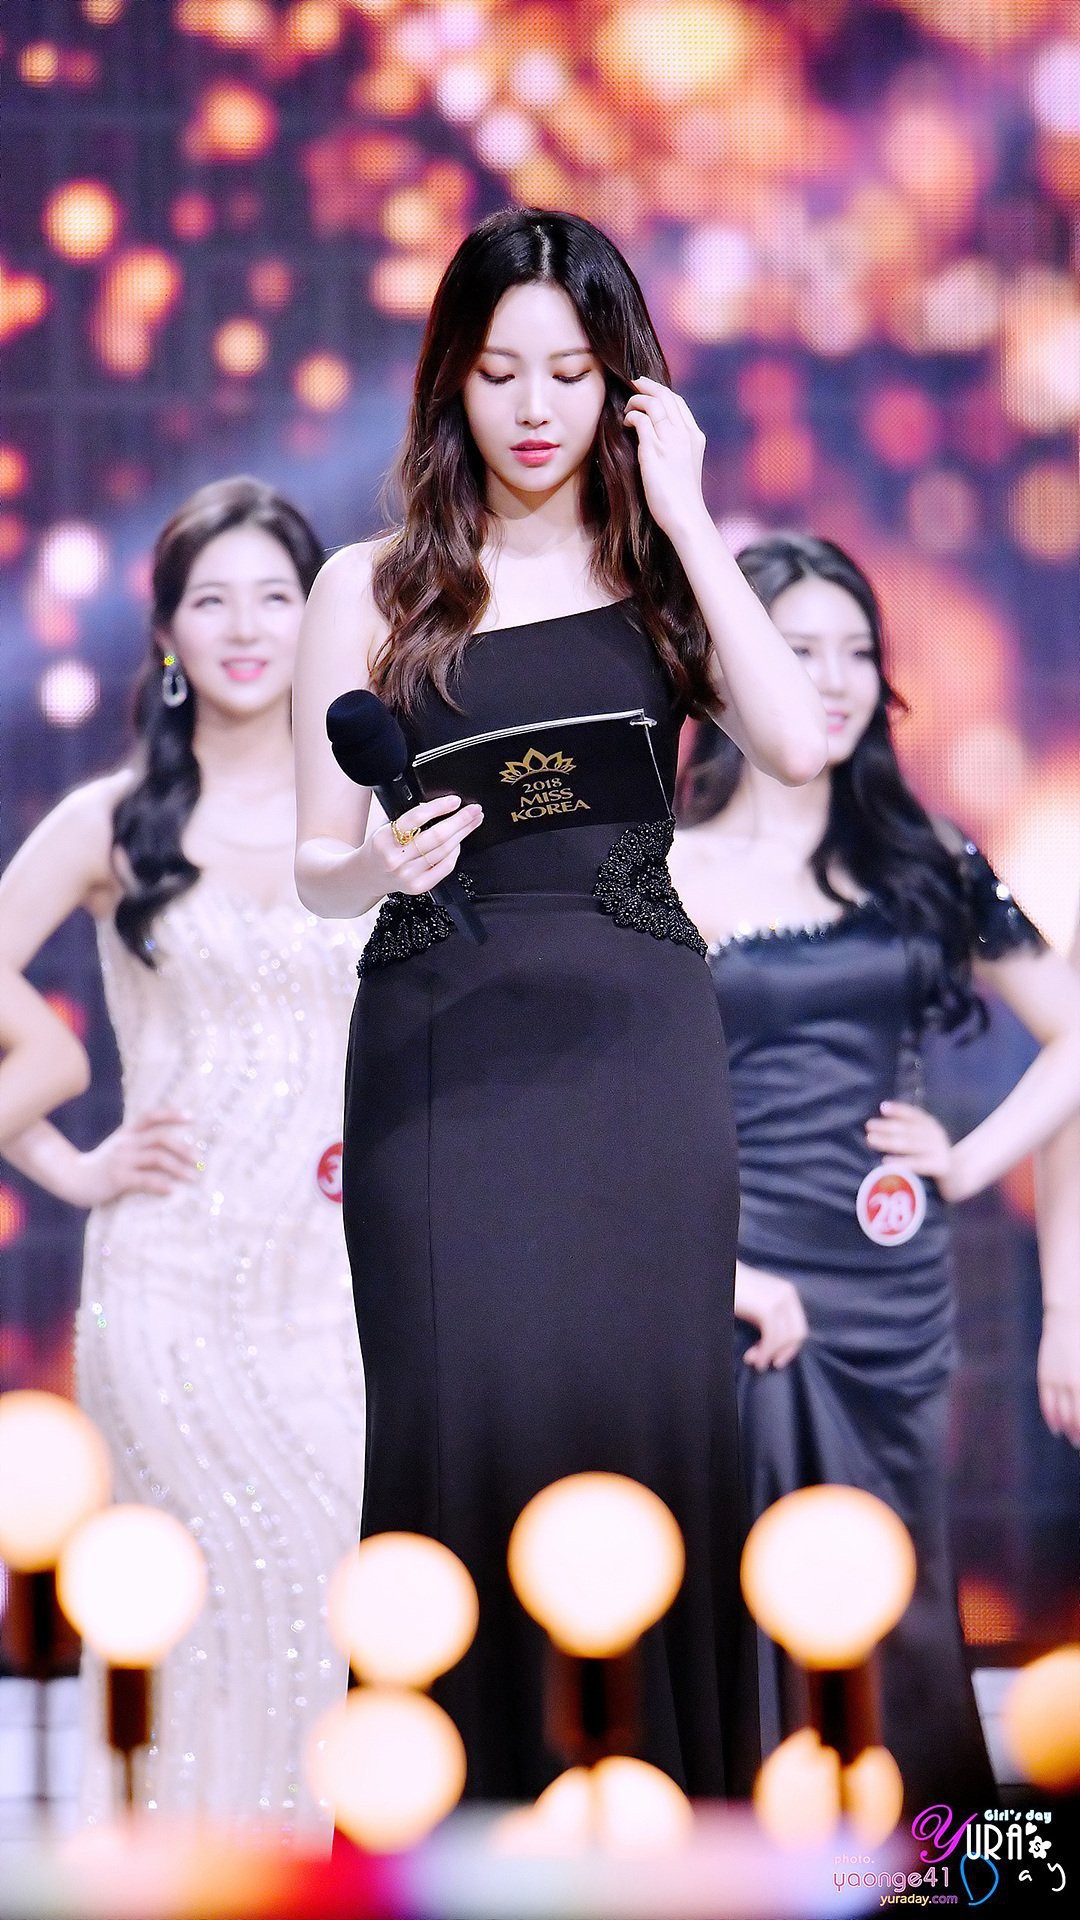 Trớ trêu các cuộc thi sắc đẹp Hàn Quốc: Hoa hậu bị “kẻ ngoài cuộc ...